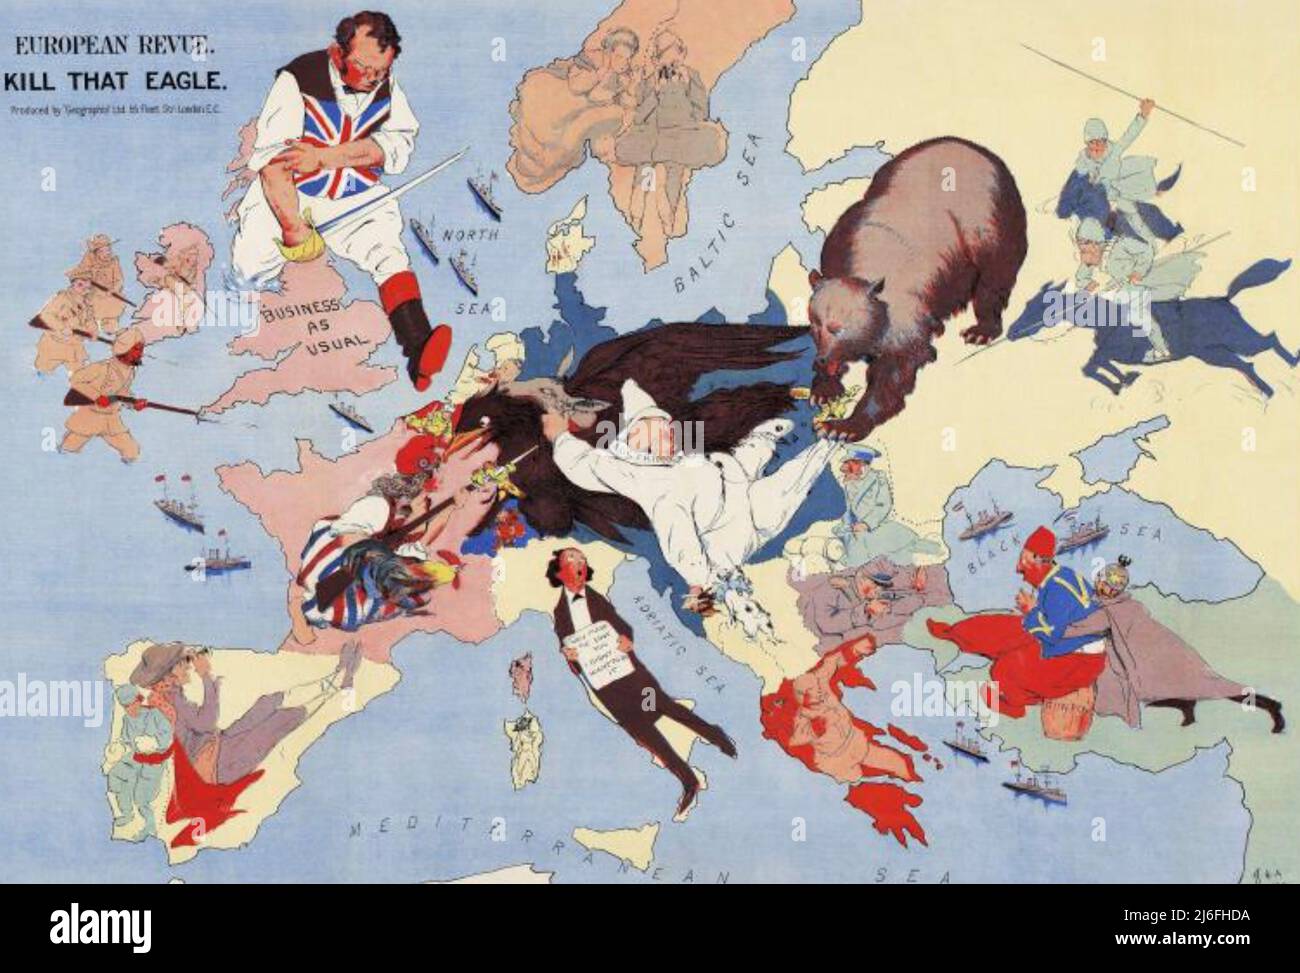 UCCIDI CHE EAGLE Un fumetto satirico dalla rivista europea Revue nel 1914 Foto Stock